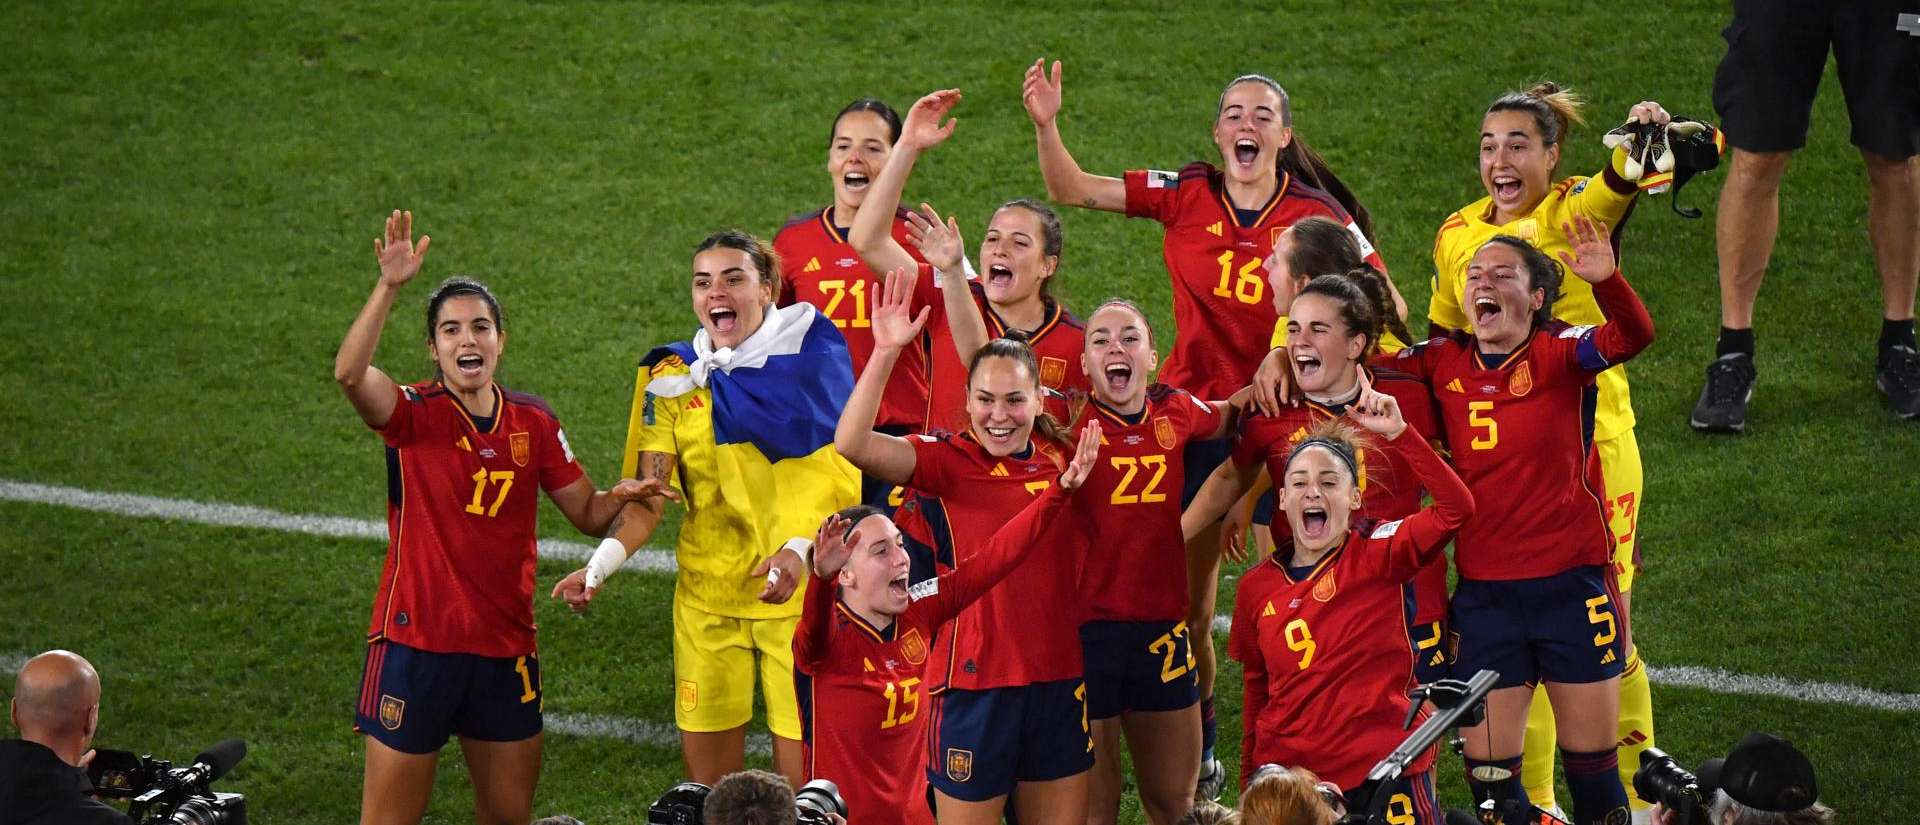 La selección española de fútbol femenino celebra el triunfo en la final y la Copa del Mundo.